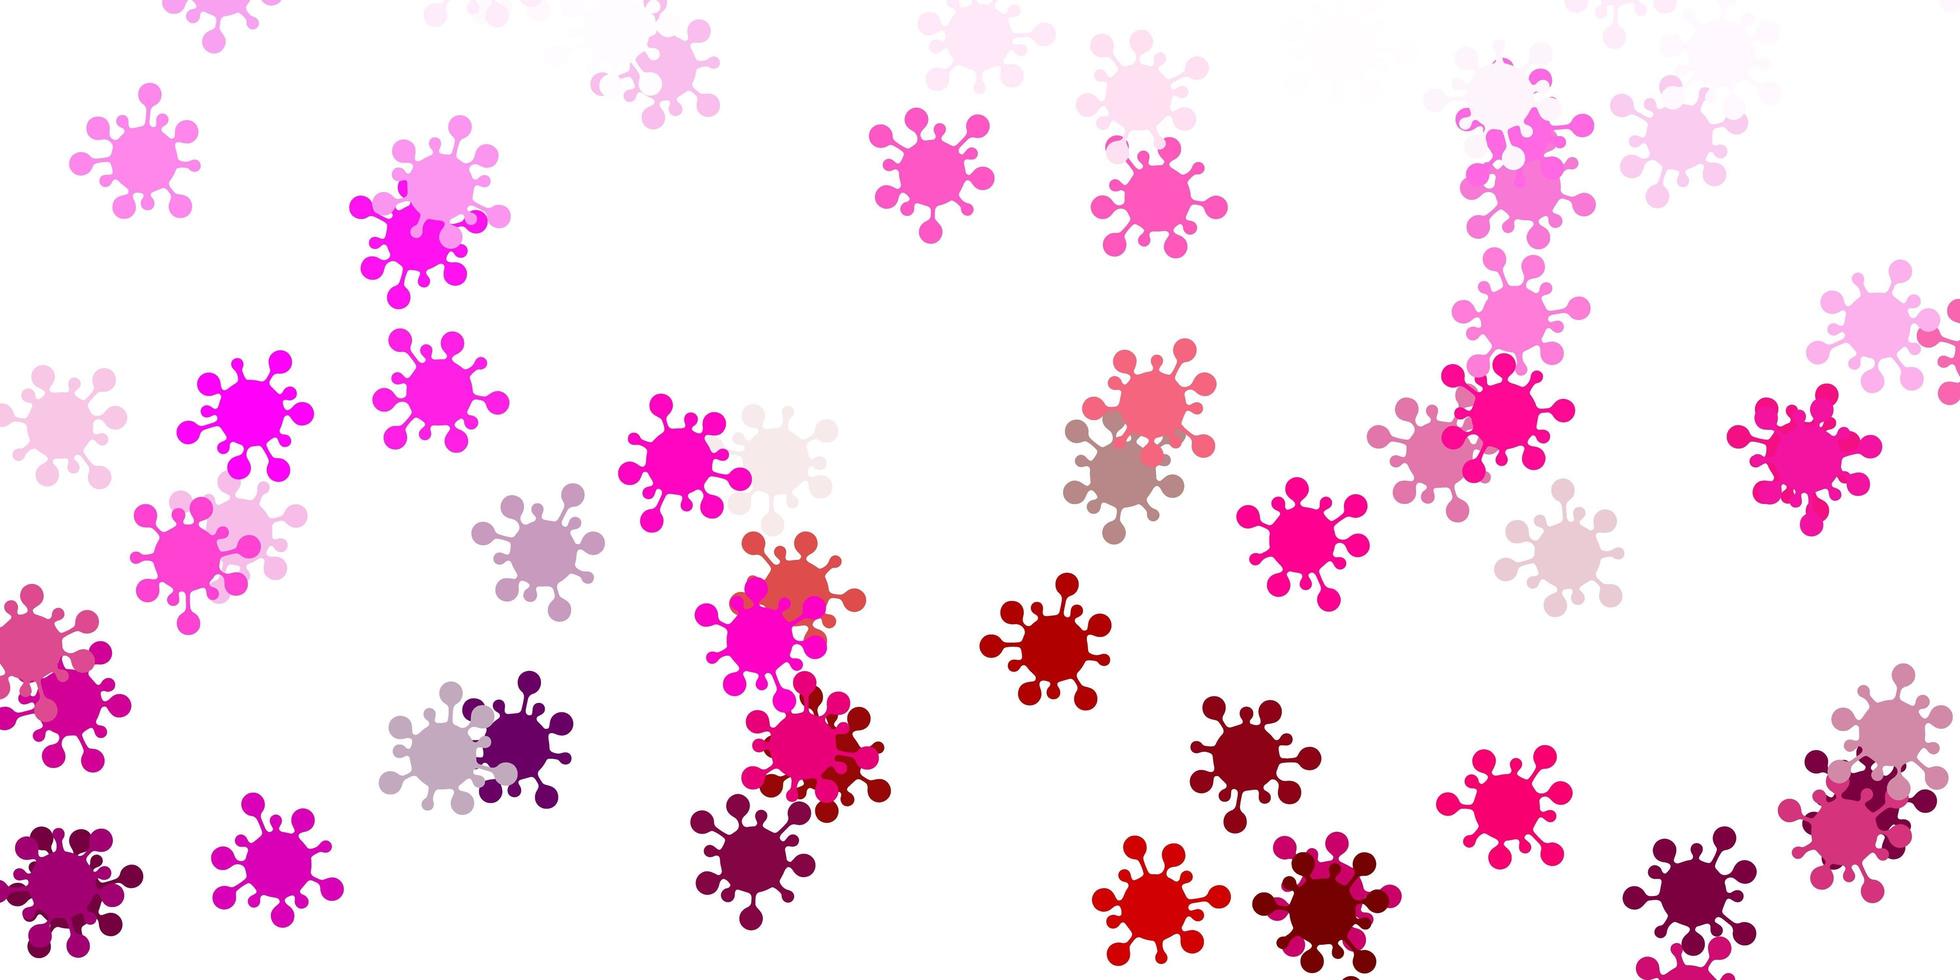 Fondo de vector rosa claro con símbolos covid-19.